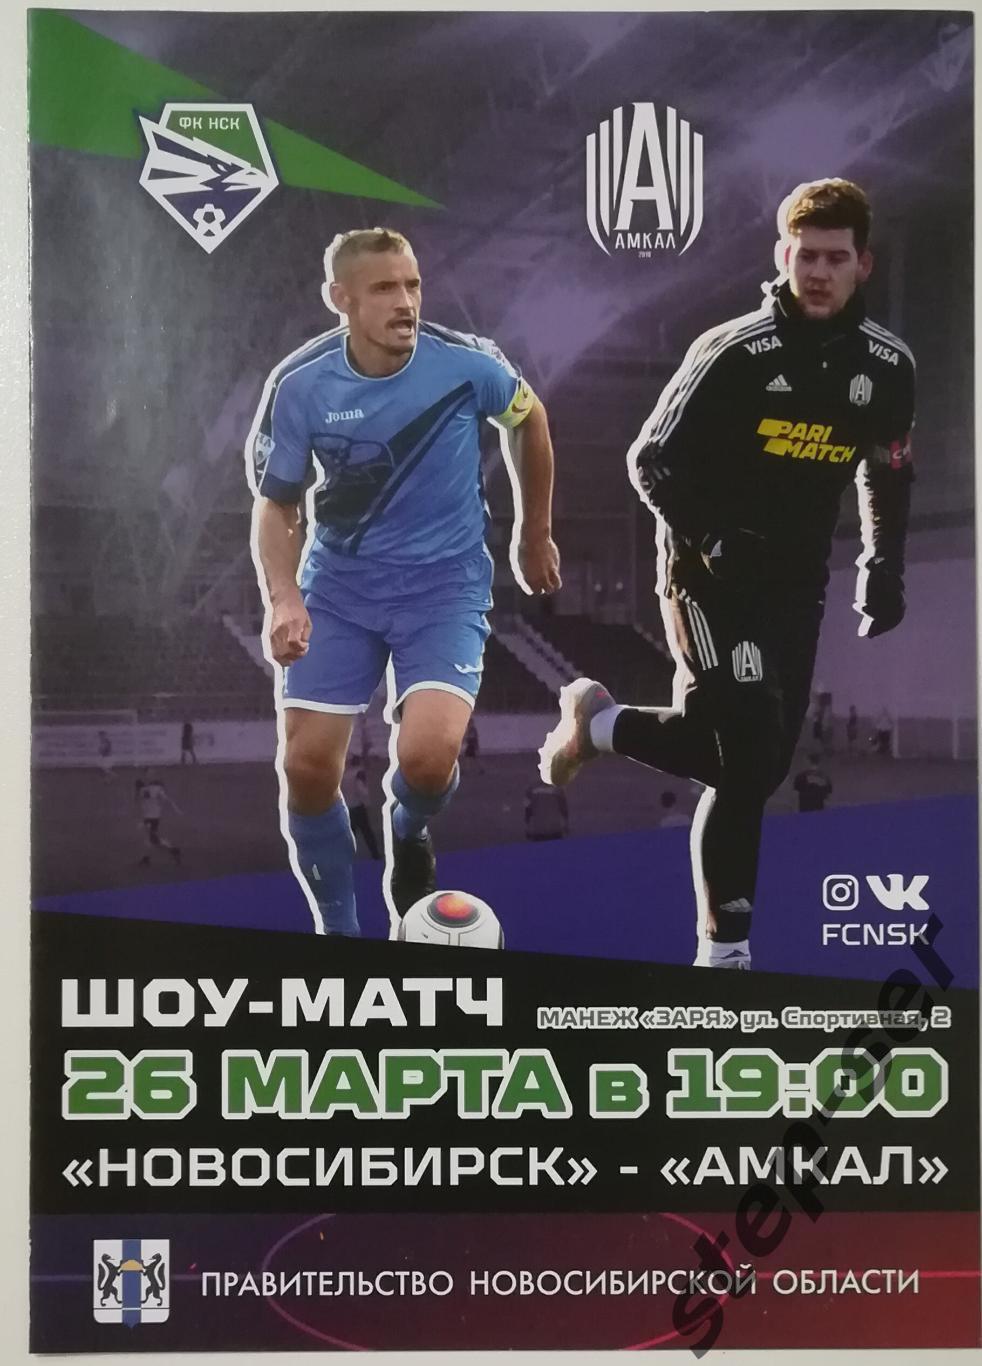 Шоу матч ФК Новосибирск - Амкал 26.03.2022